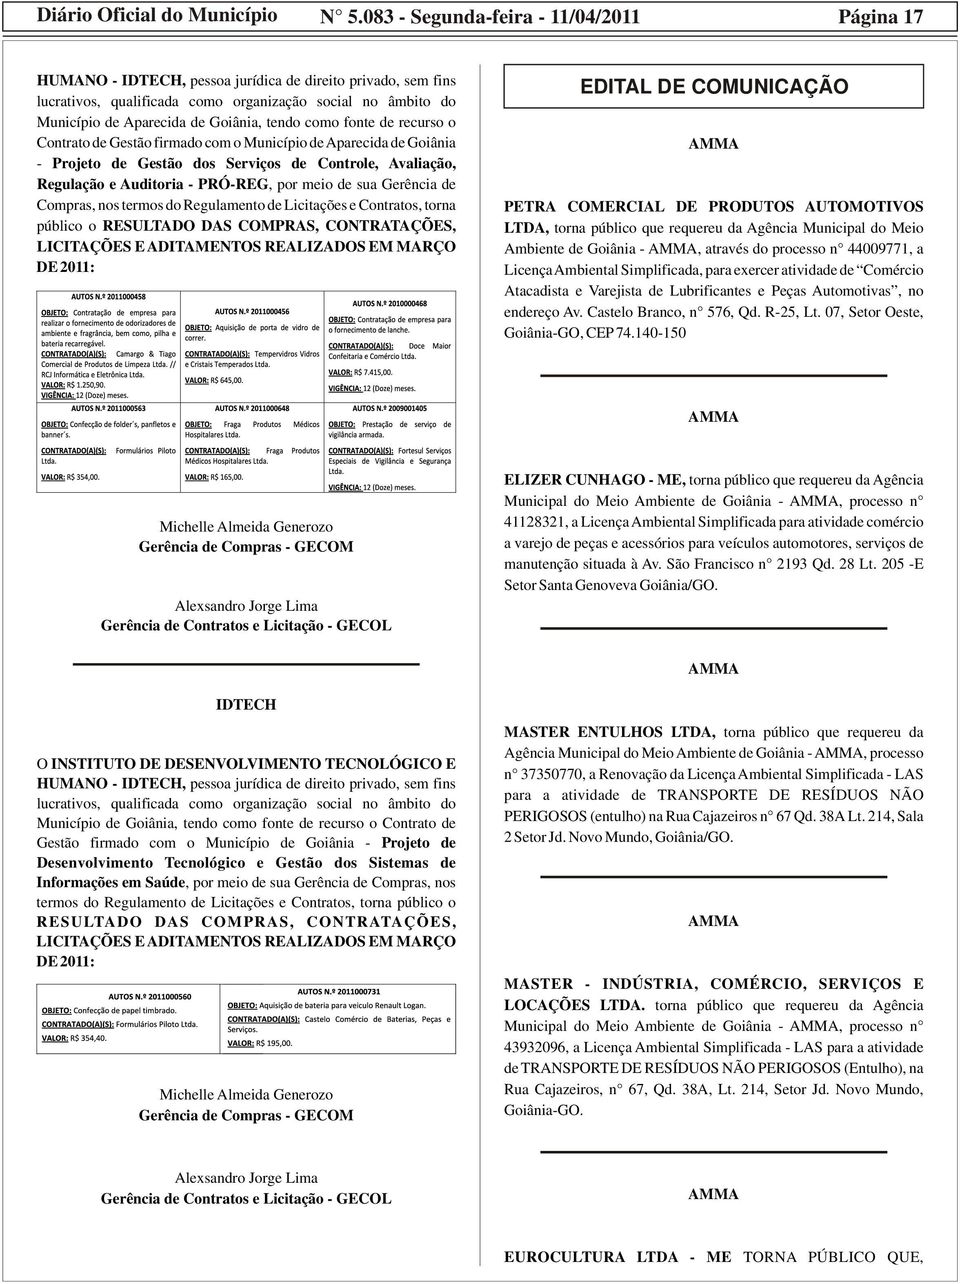 Goiânia, tendo como fonte de recurso o Contrato de Gestão firmado com o Município de Aparecida de Goiânia - Projeto de Gestão dos Serviços de Controle, Avaliação, Regulação e Auditoria - PRÓ-REG, por